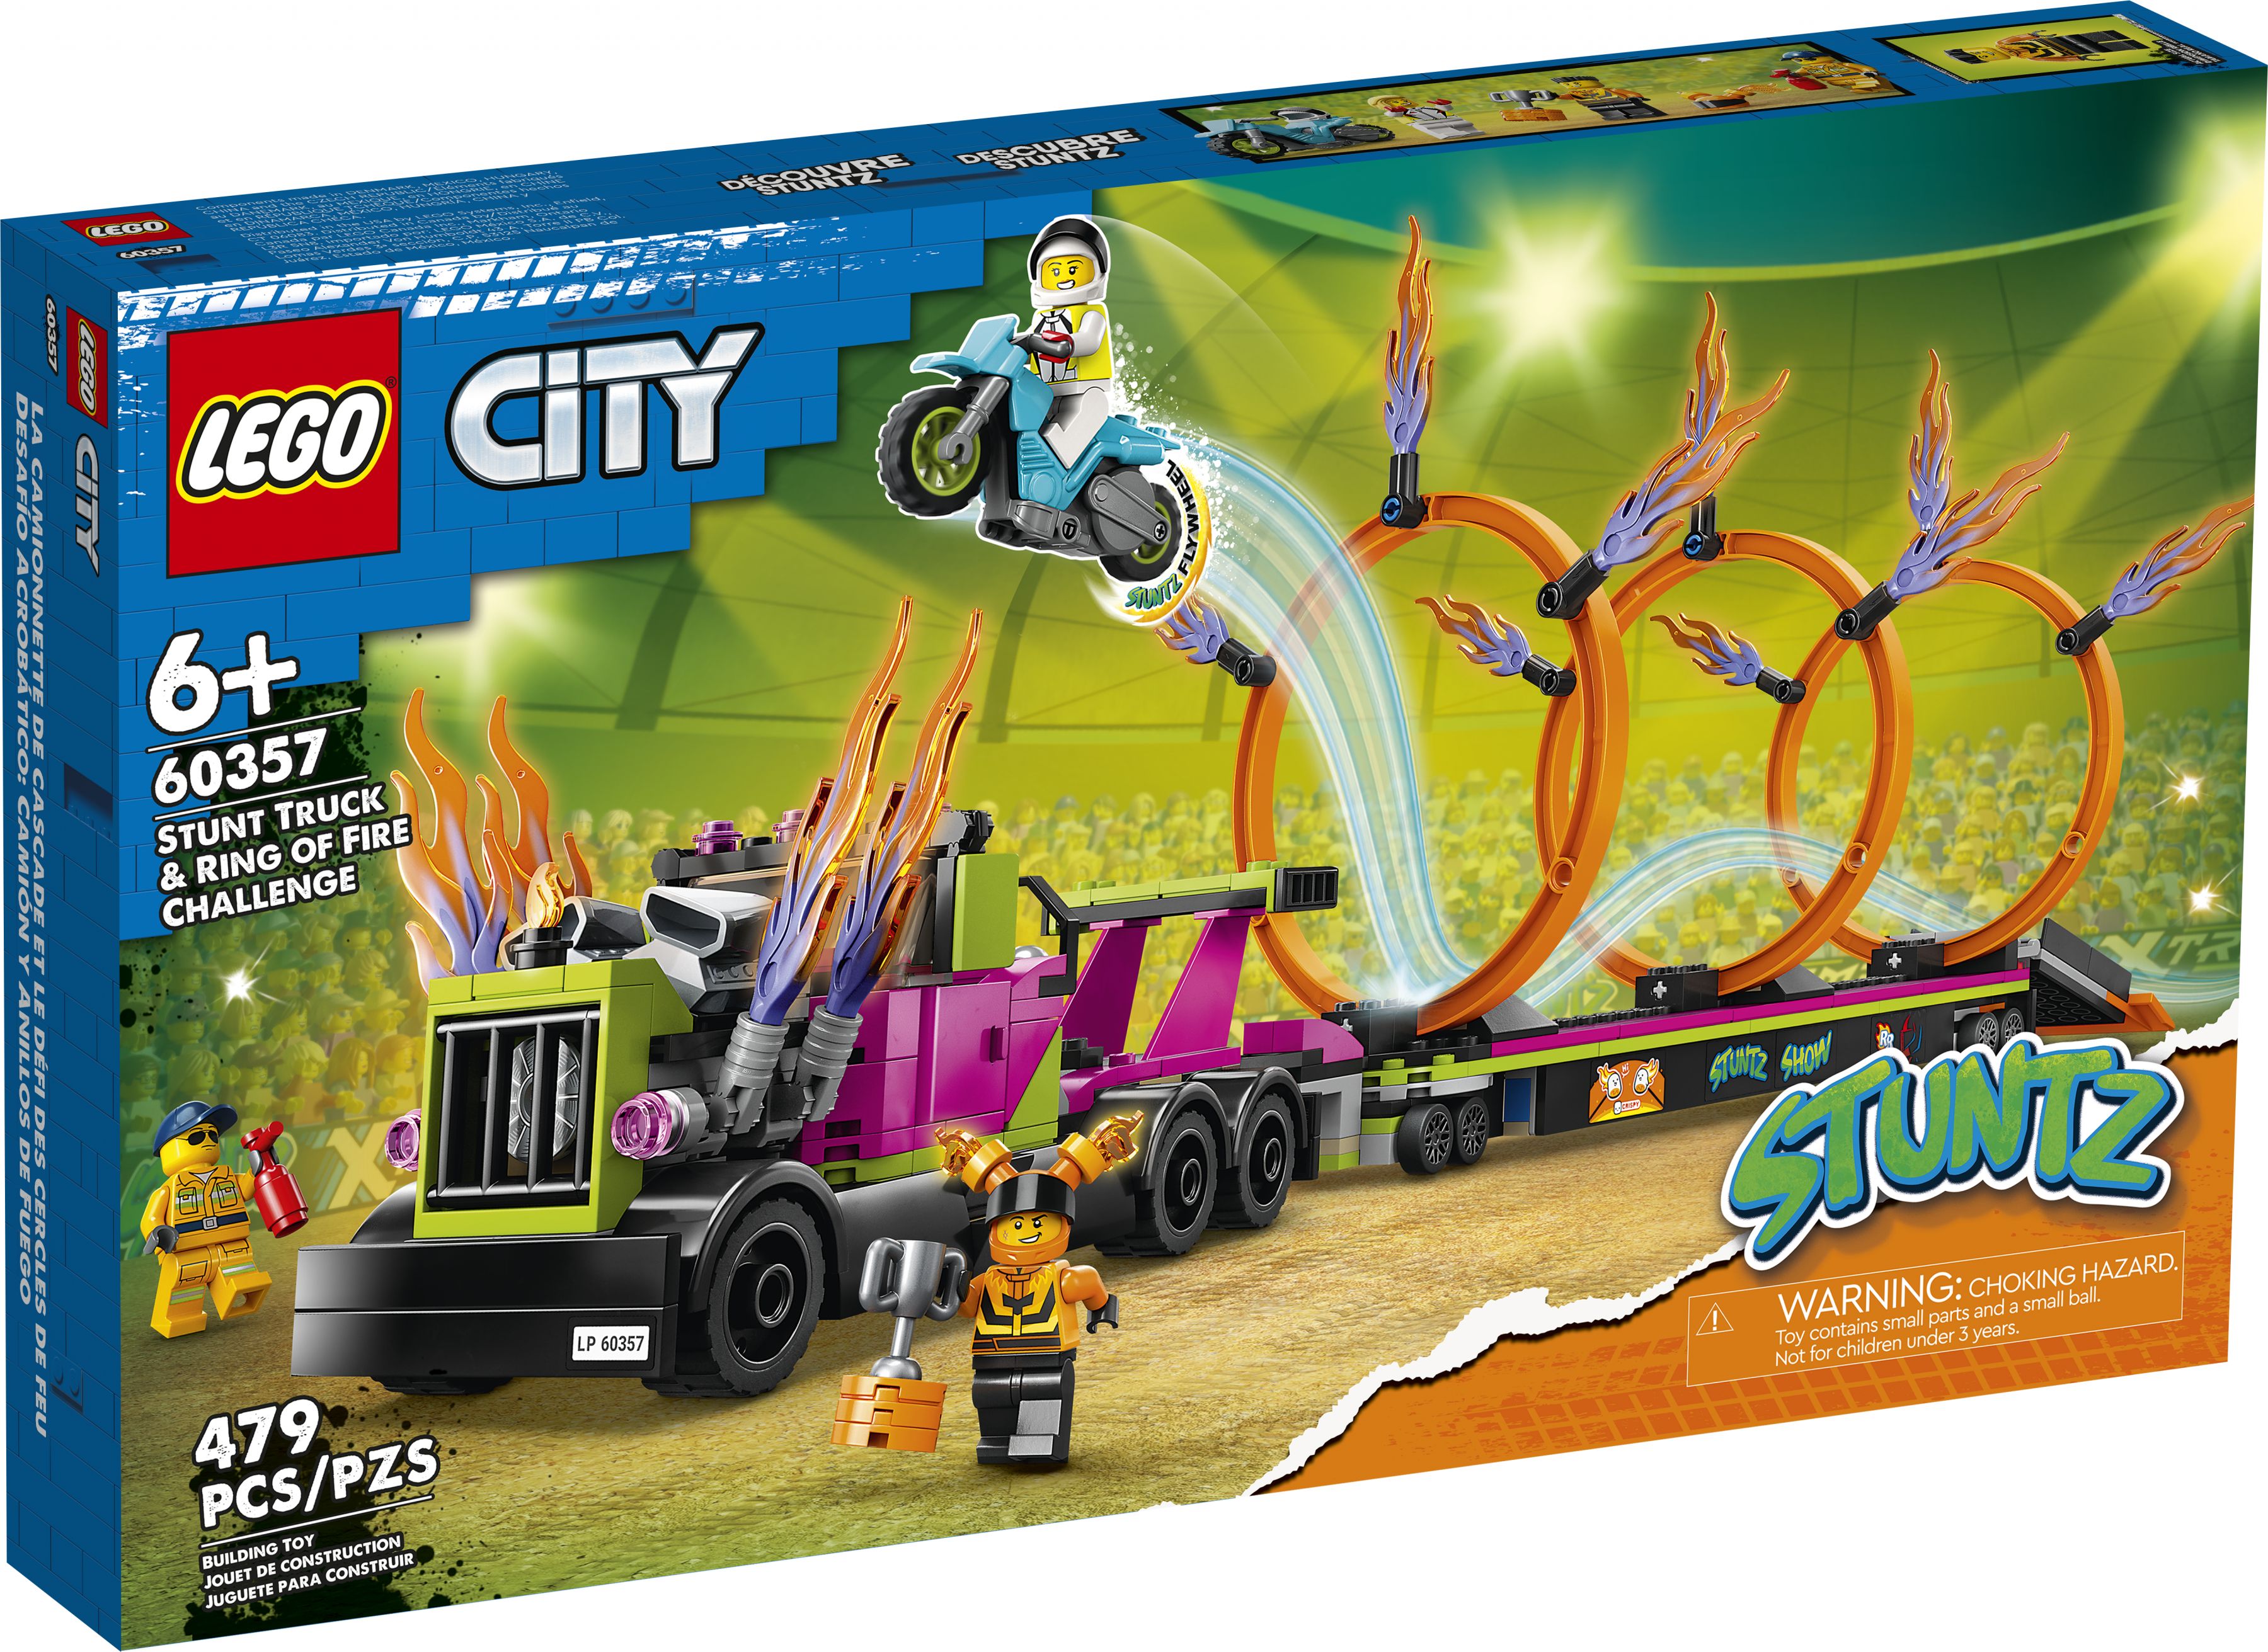 LEGO City 60357 Stunttruck & Feuerreifen-Challenge LEGO_60357_Box1_v39.jpg